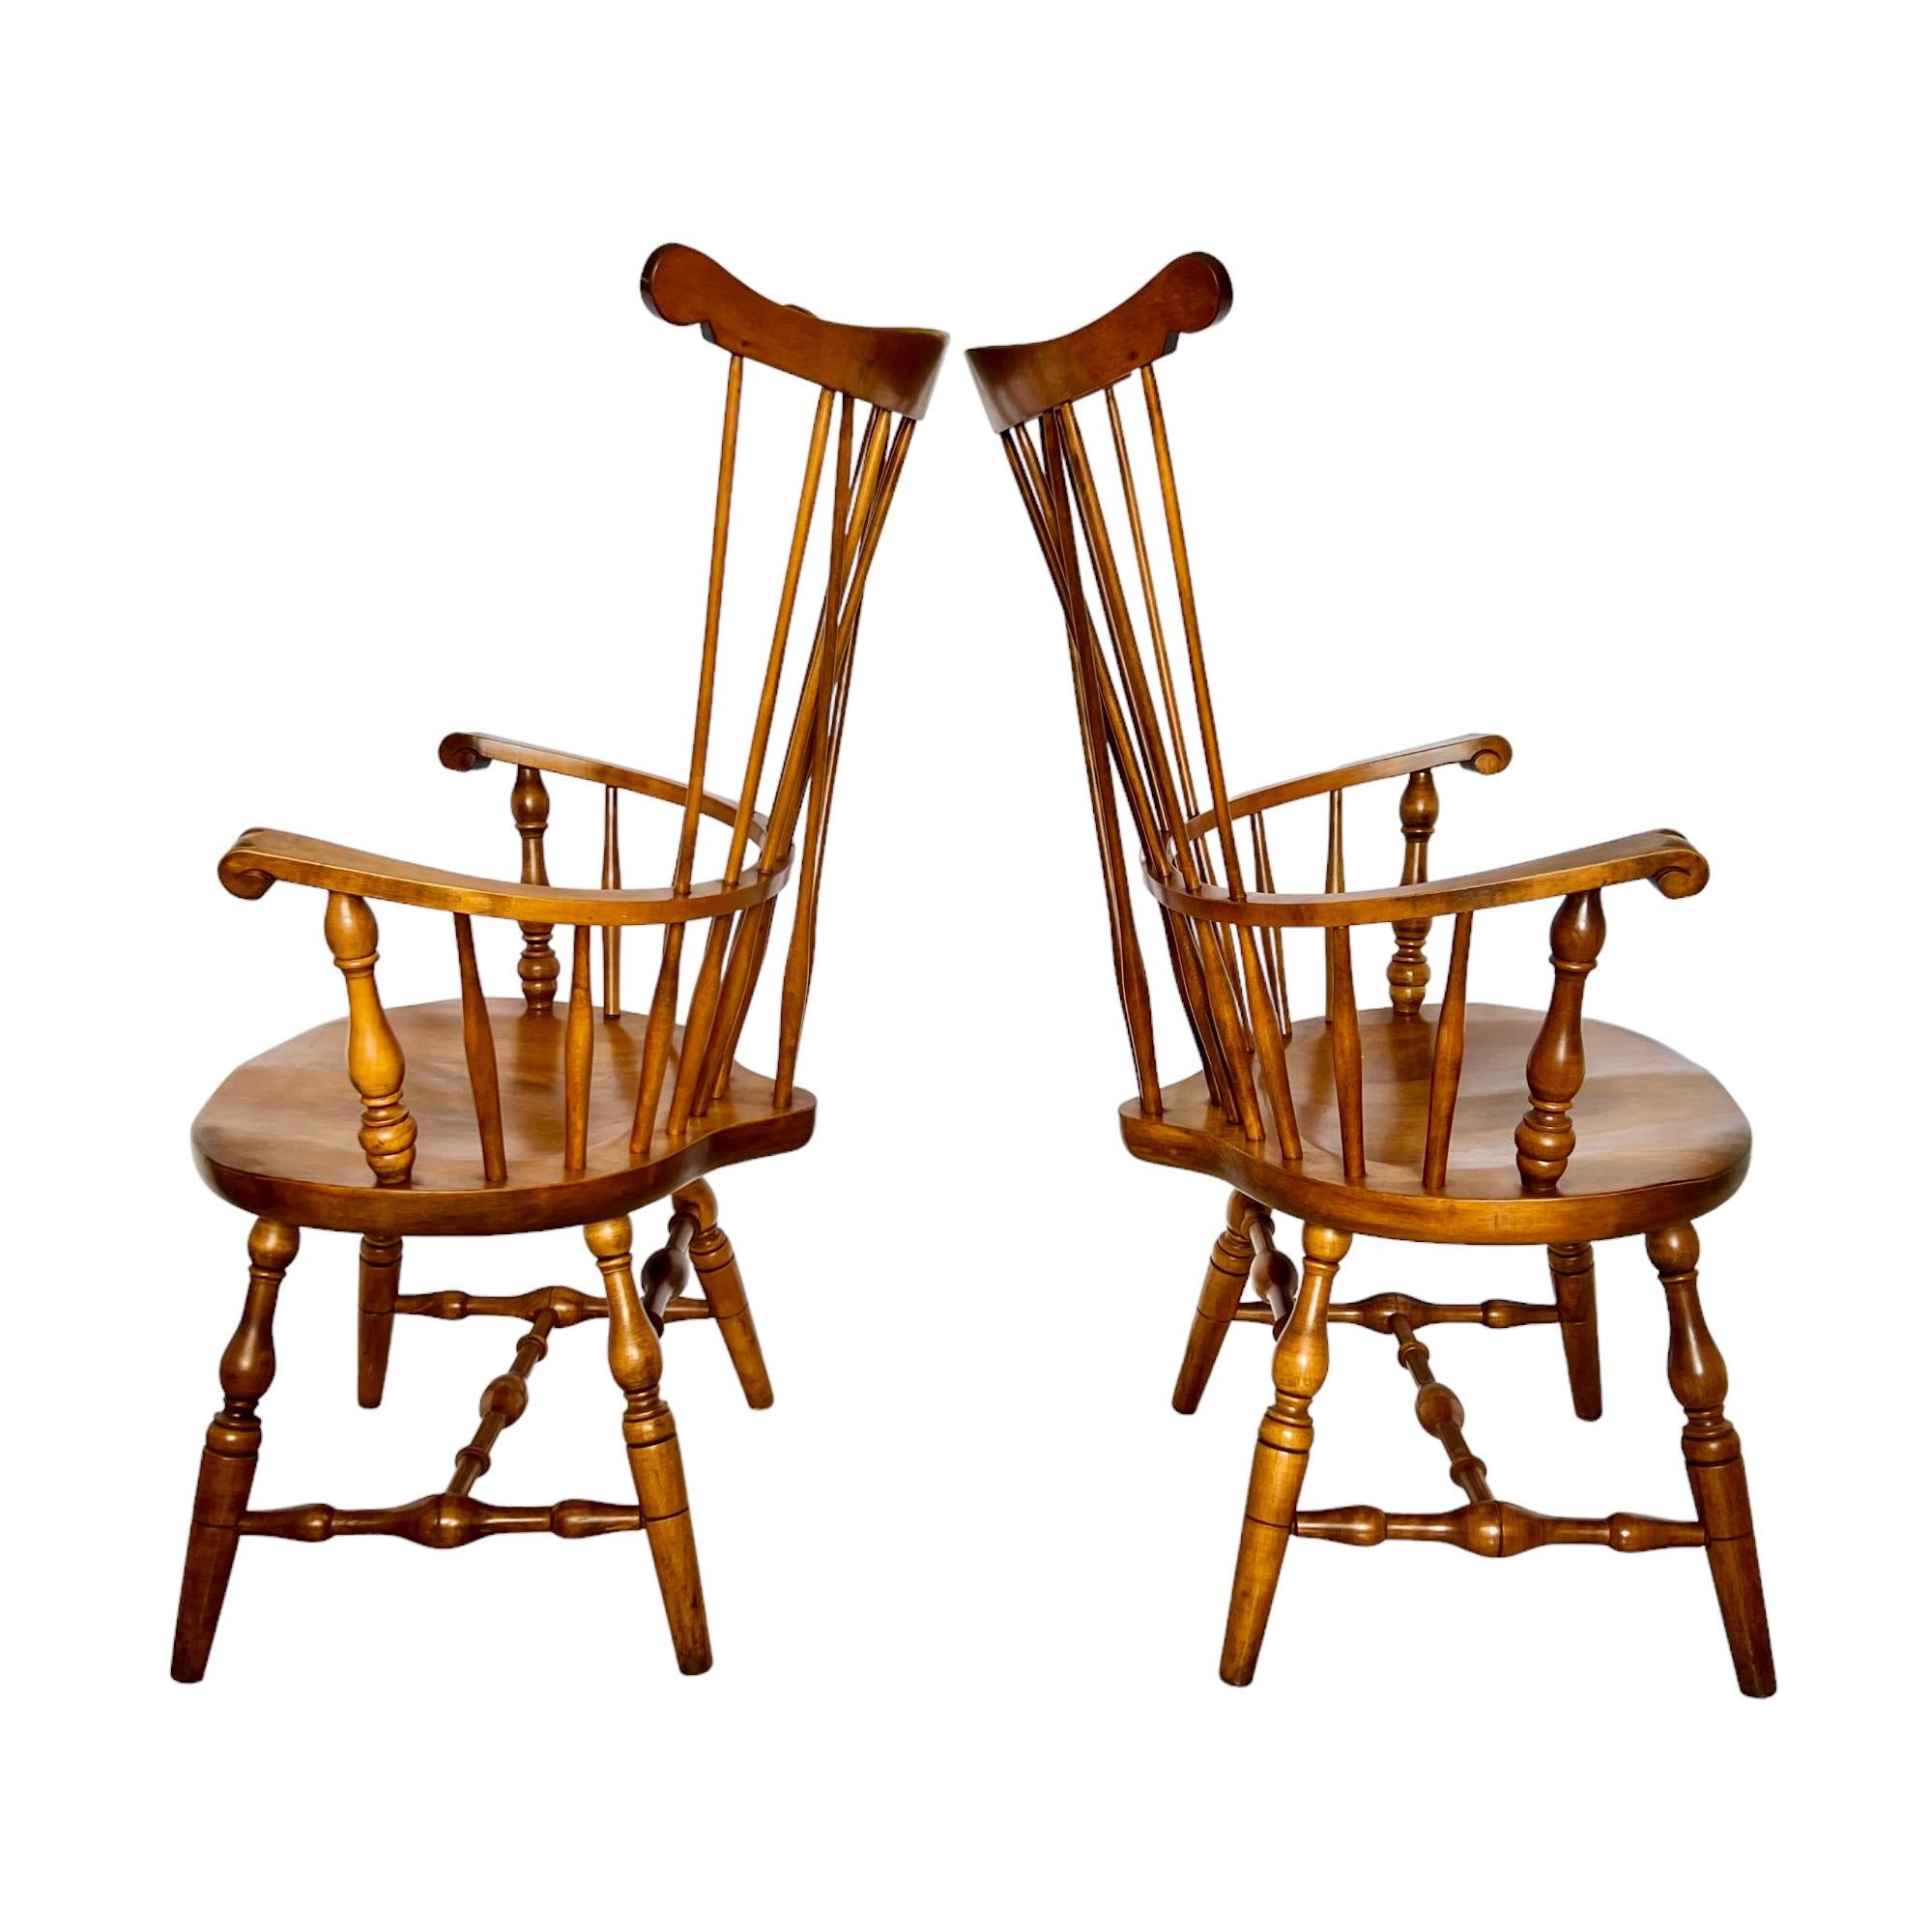 Colonial américain Paire de fauteuils Windsor à dossier en peigne S. Bent and Bros Brace, d'époque